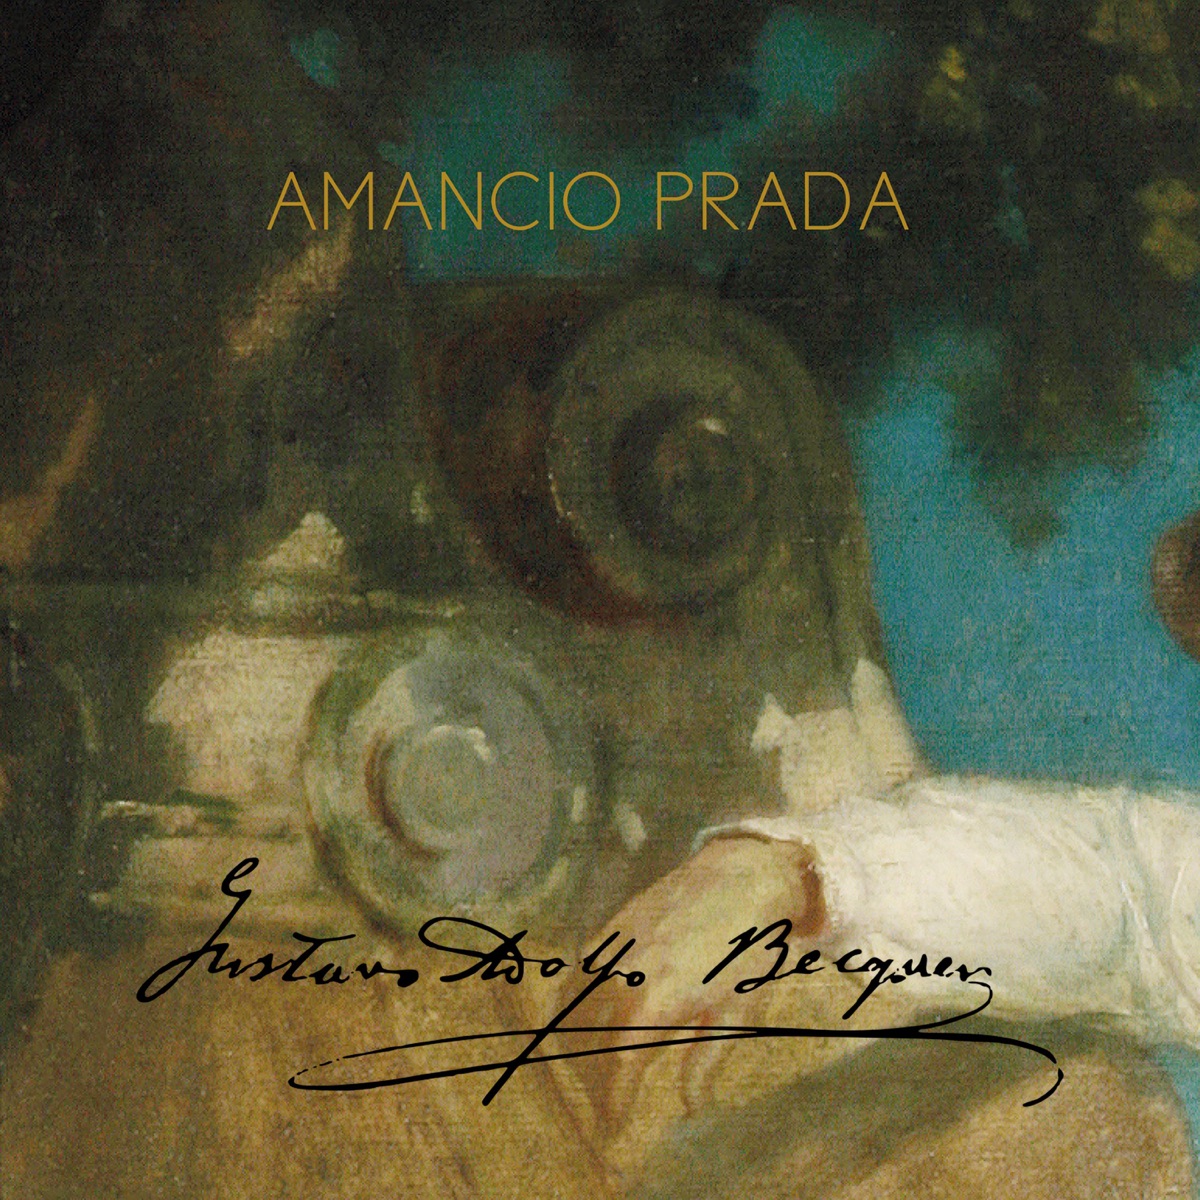 Canciones de Amor y Celda - Album by Amancio Prada - Apple Music